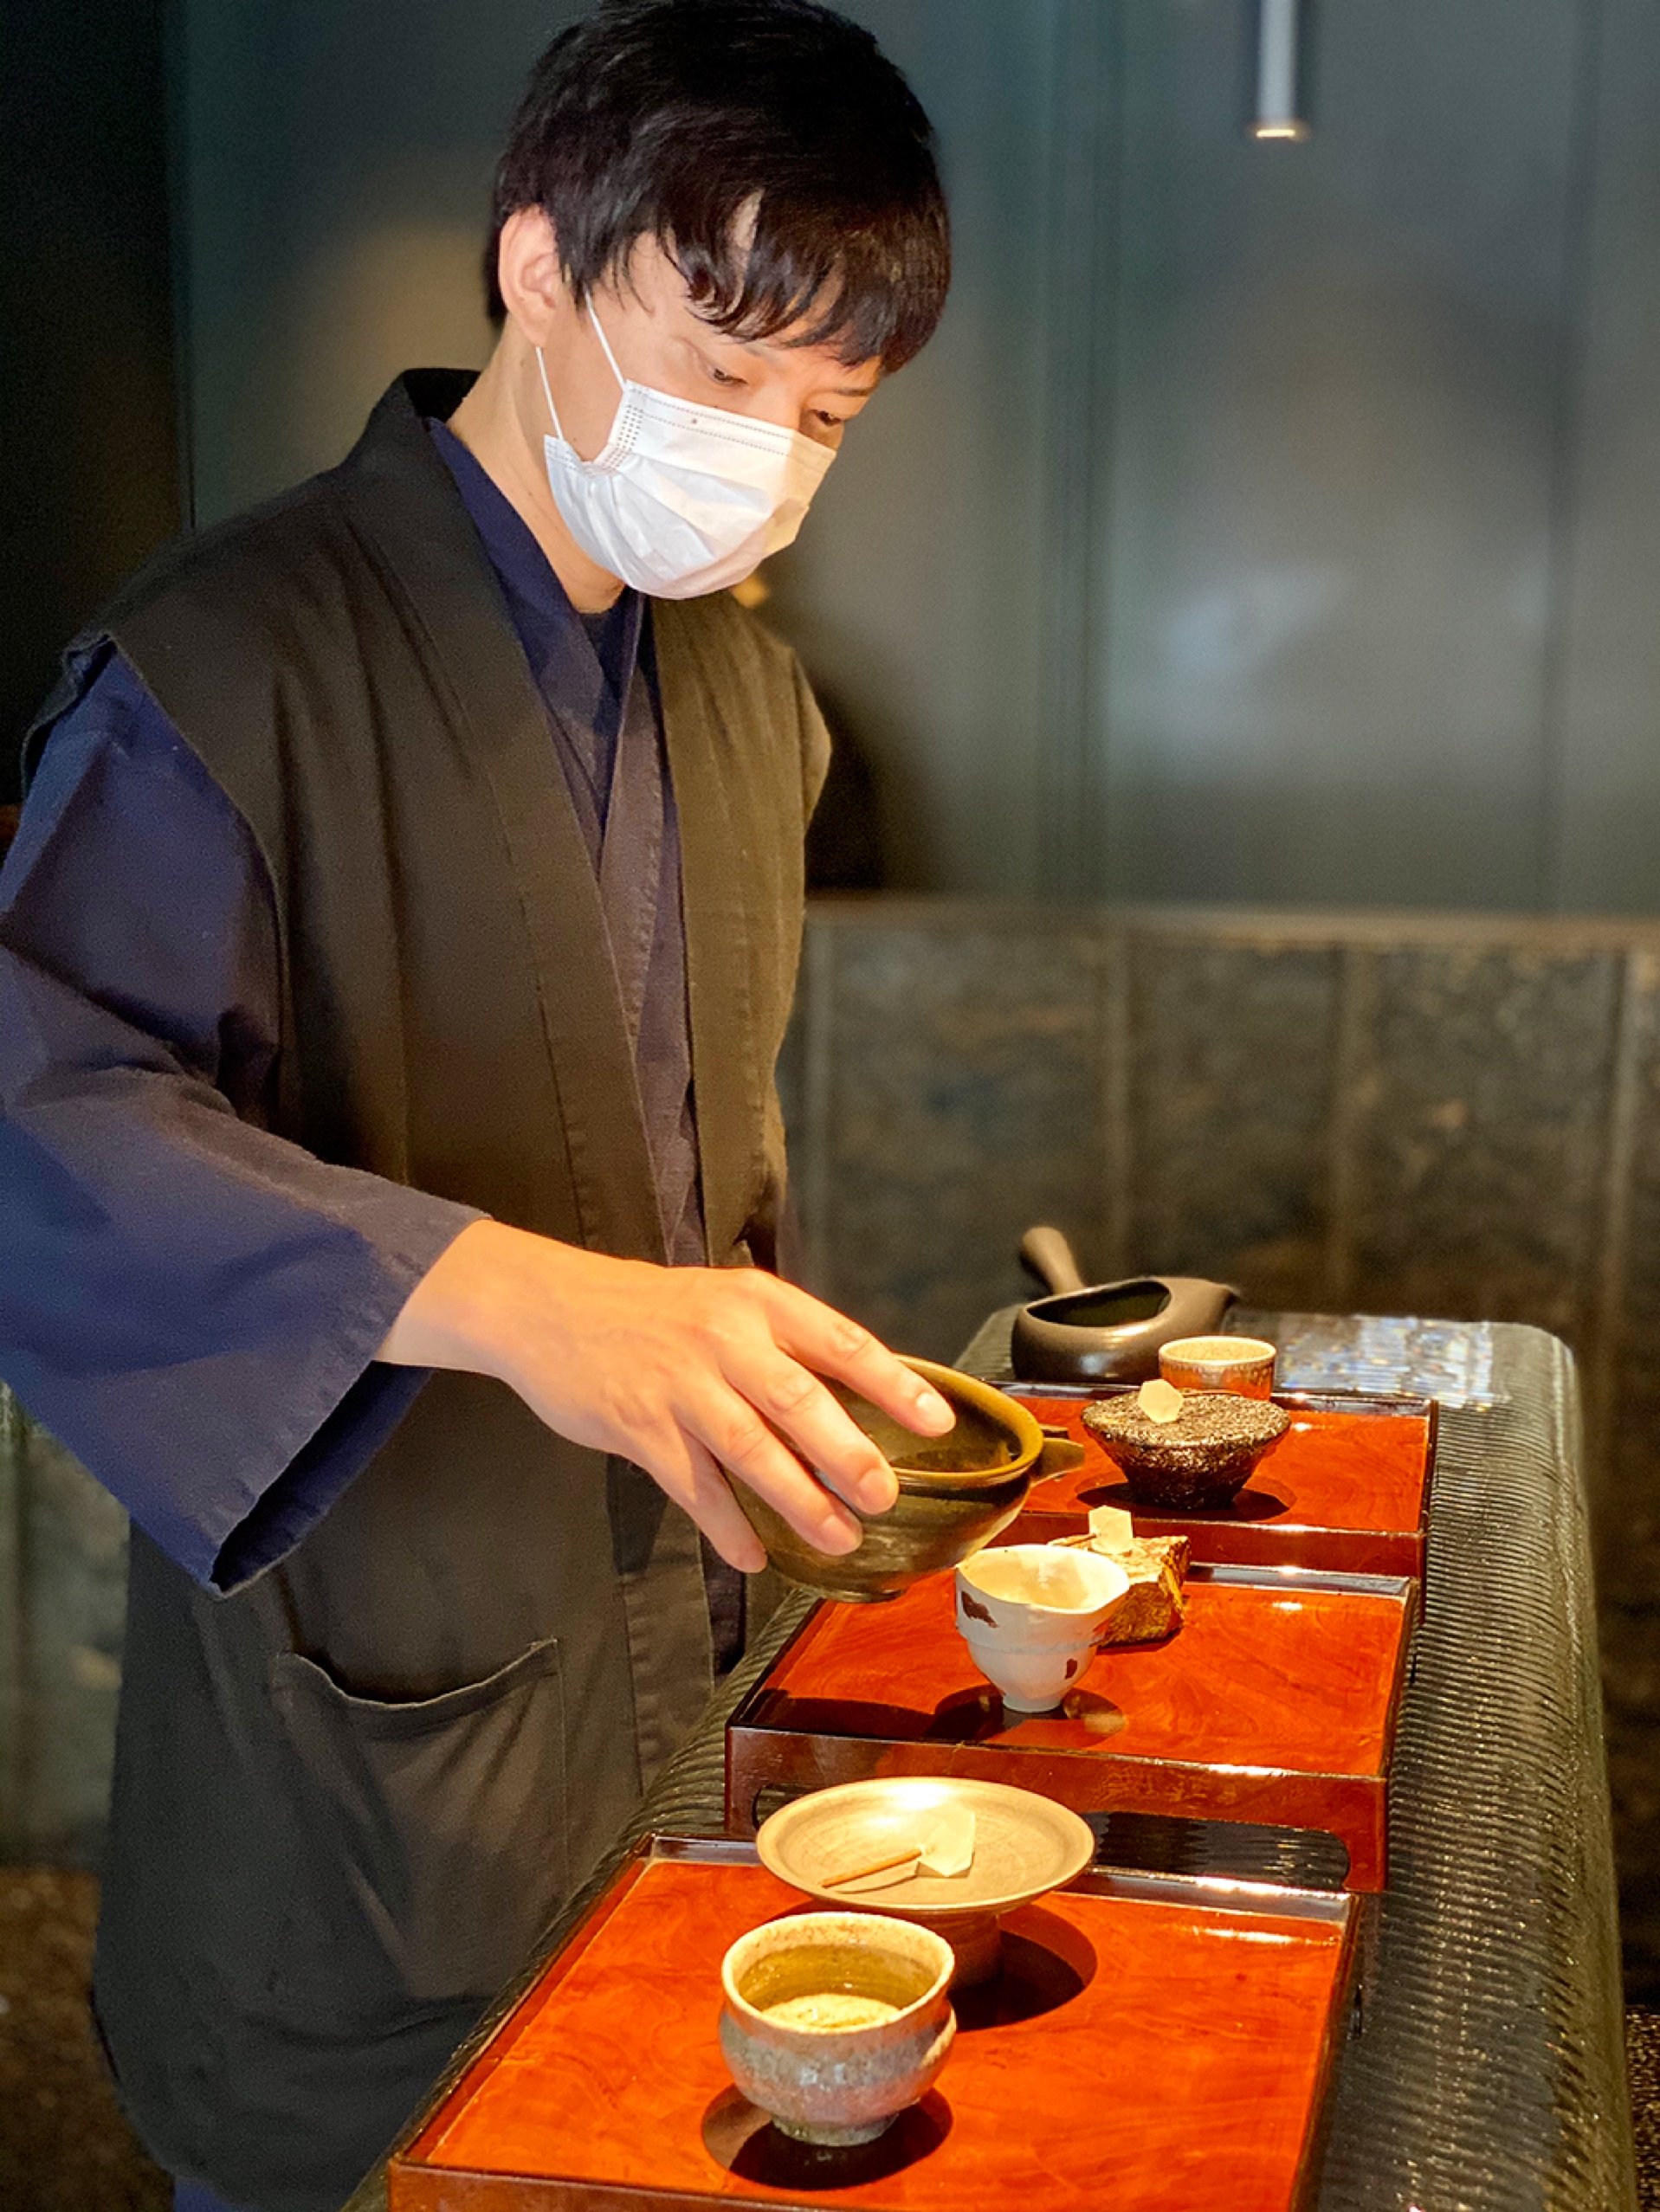 日本一暗い茶屋と銘打つ「bys tea（バイスティー)」 | スイーツコーディネーター 松本由紀子さんのSweets Blog「JEWEL TRAY  STYLE」 | 業務用ケーキトレー・ゴールドトレーブランド『JEWEL TRAY』 (ジュエルトレー)